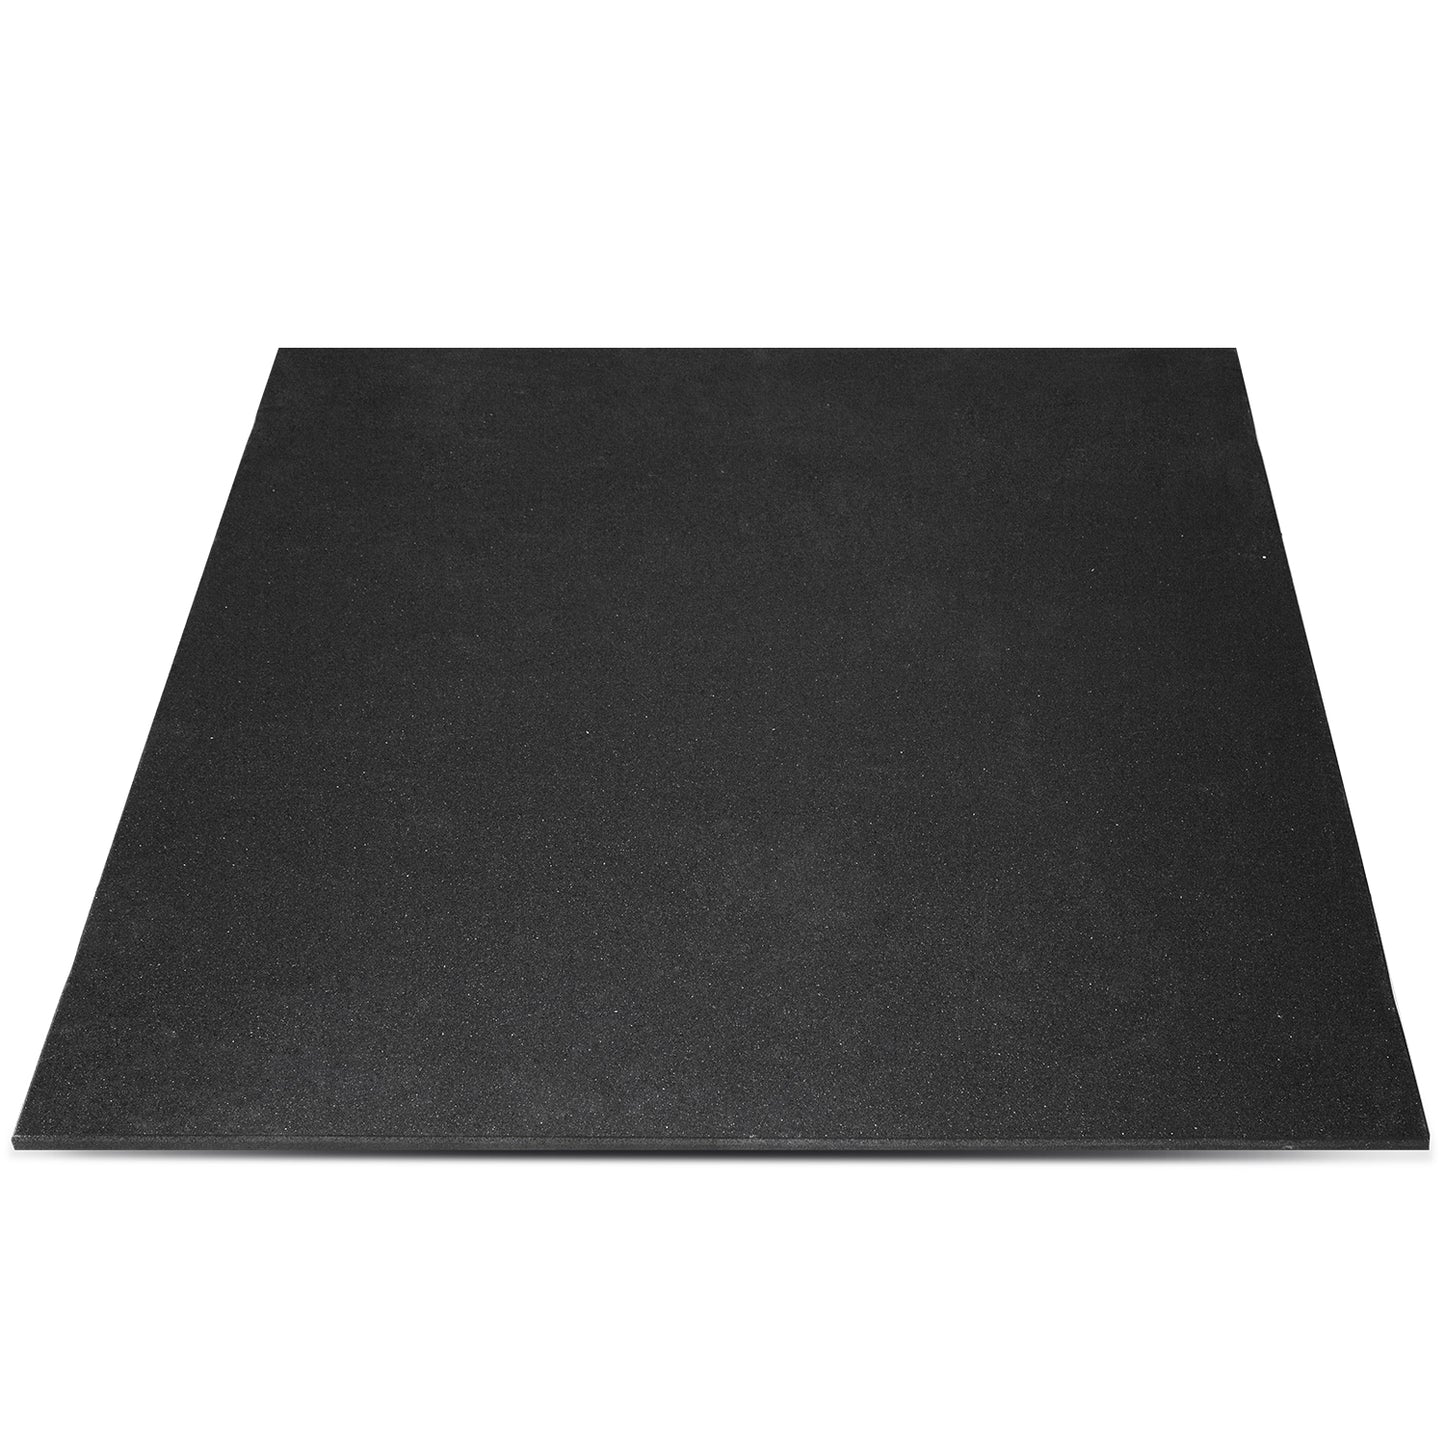 50mm Commercial Dual Density Rubber Gym Floor Tile Mat (1m x 1m)